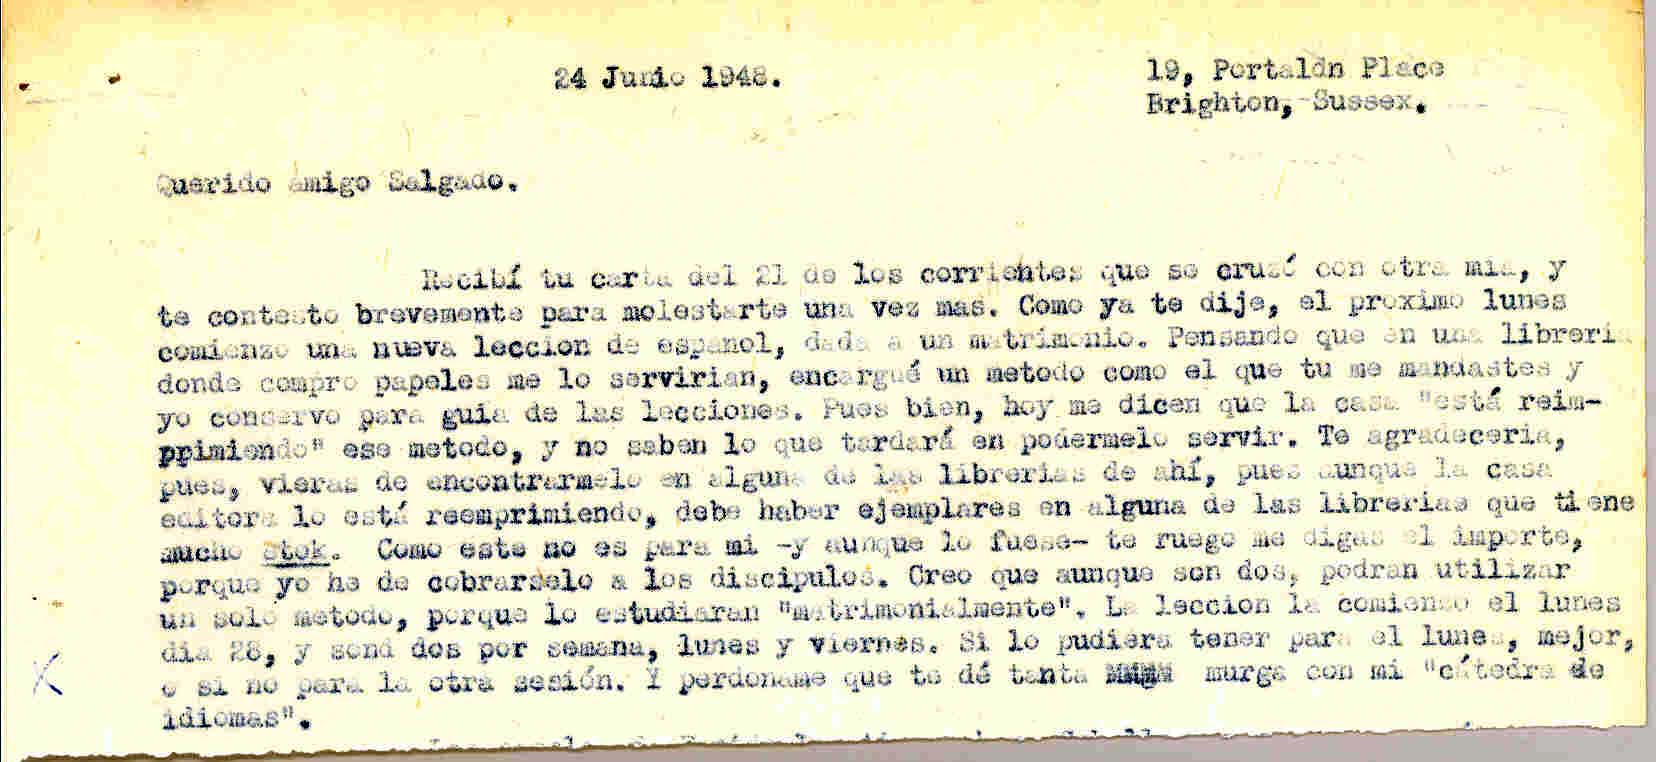 Carta a Manuel Salgado solicitando que busque en algunas librerias algún ejemplar de la Guía de las lecciones, pues comienza a impartir lecciones de español a un matrimonio